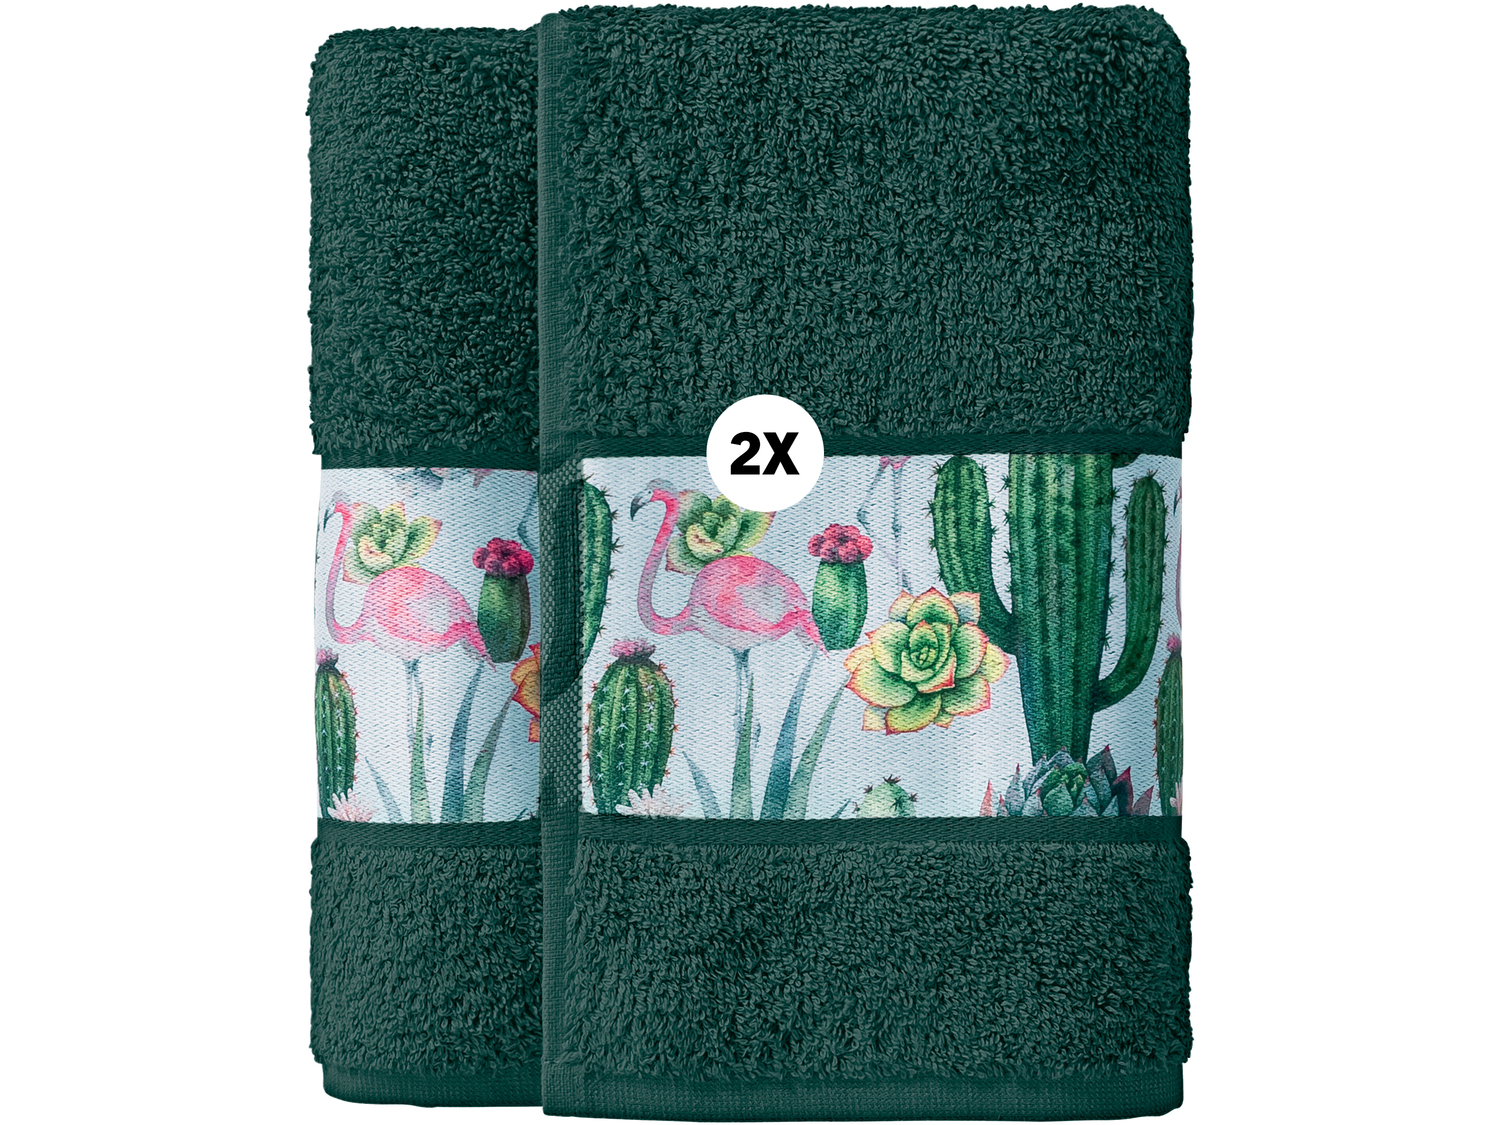 Ręczniki 50 x 100 cm, 2 szt.* Miomare, cena 13,99 PLN 
* Artykuł dostępny wyłącznie ...